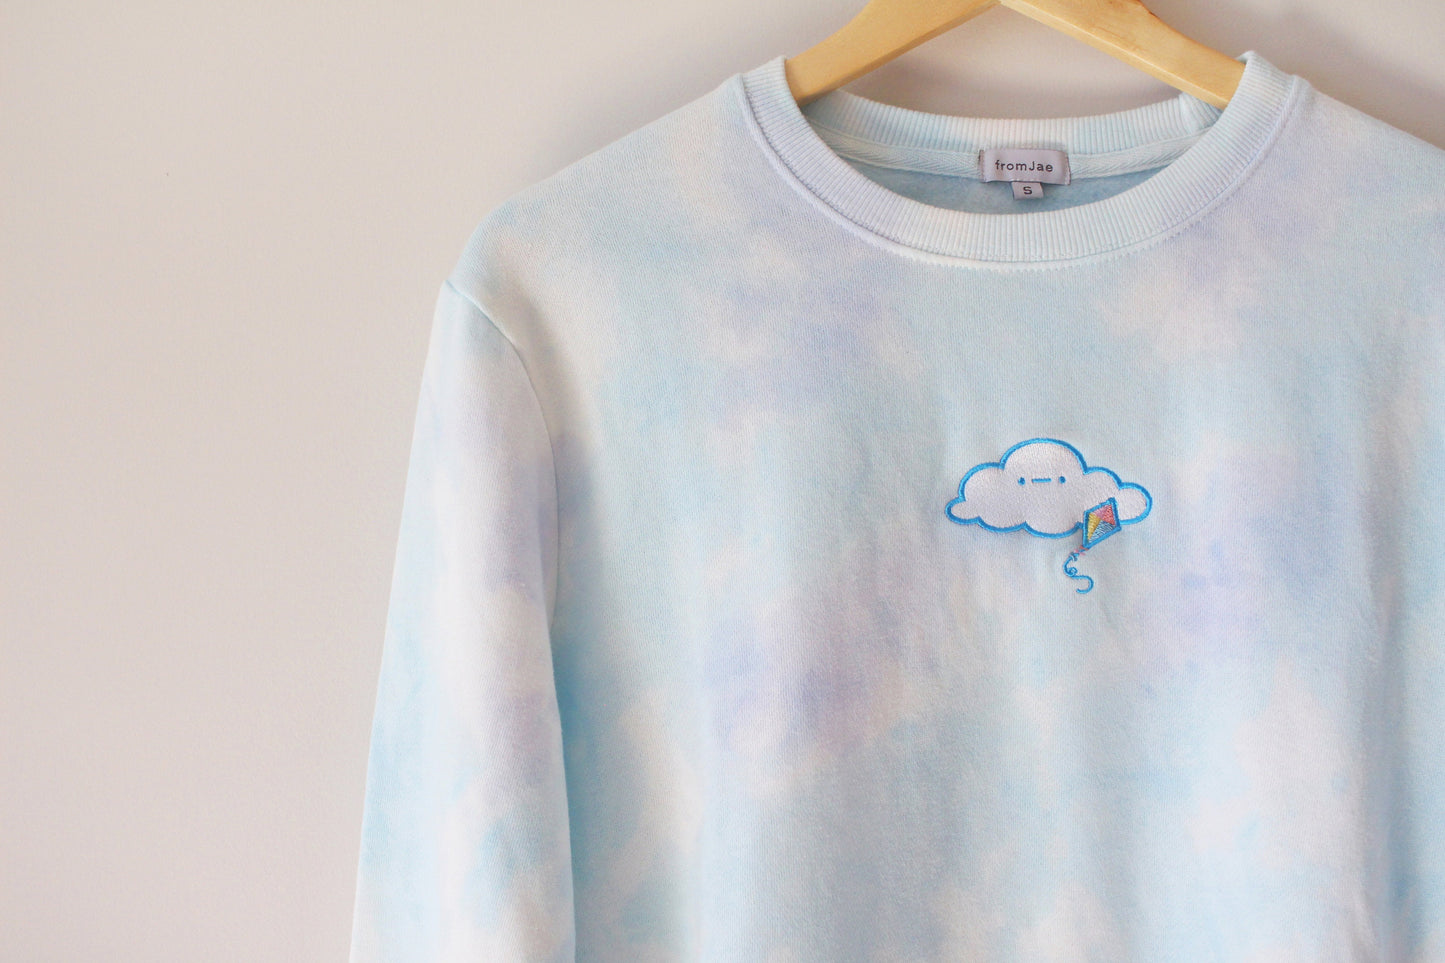 Chill Cloud Tie Dye Women's Sweatshirt